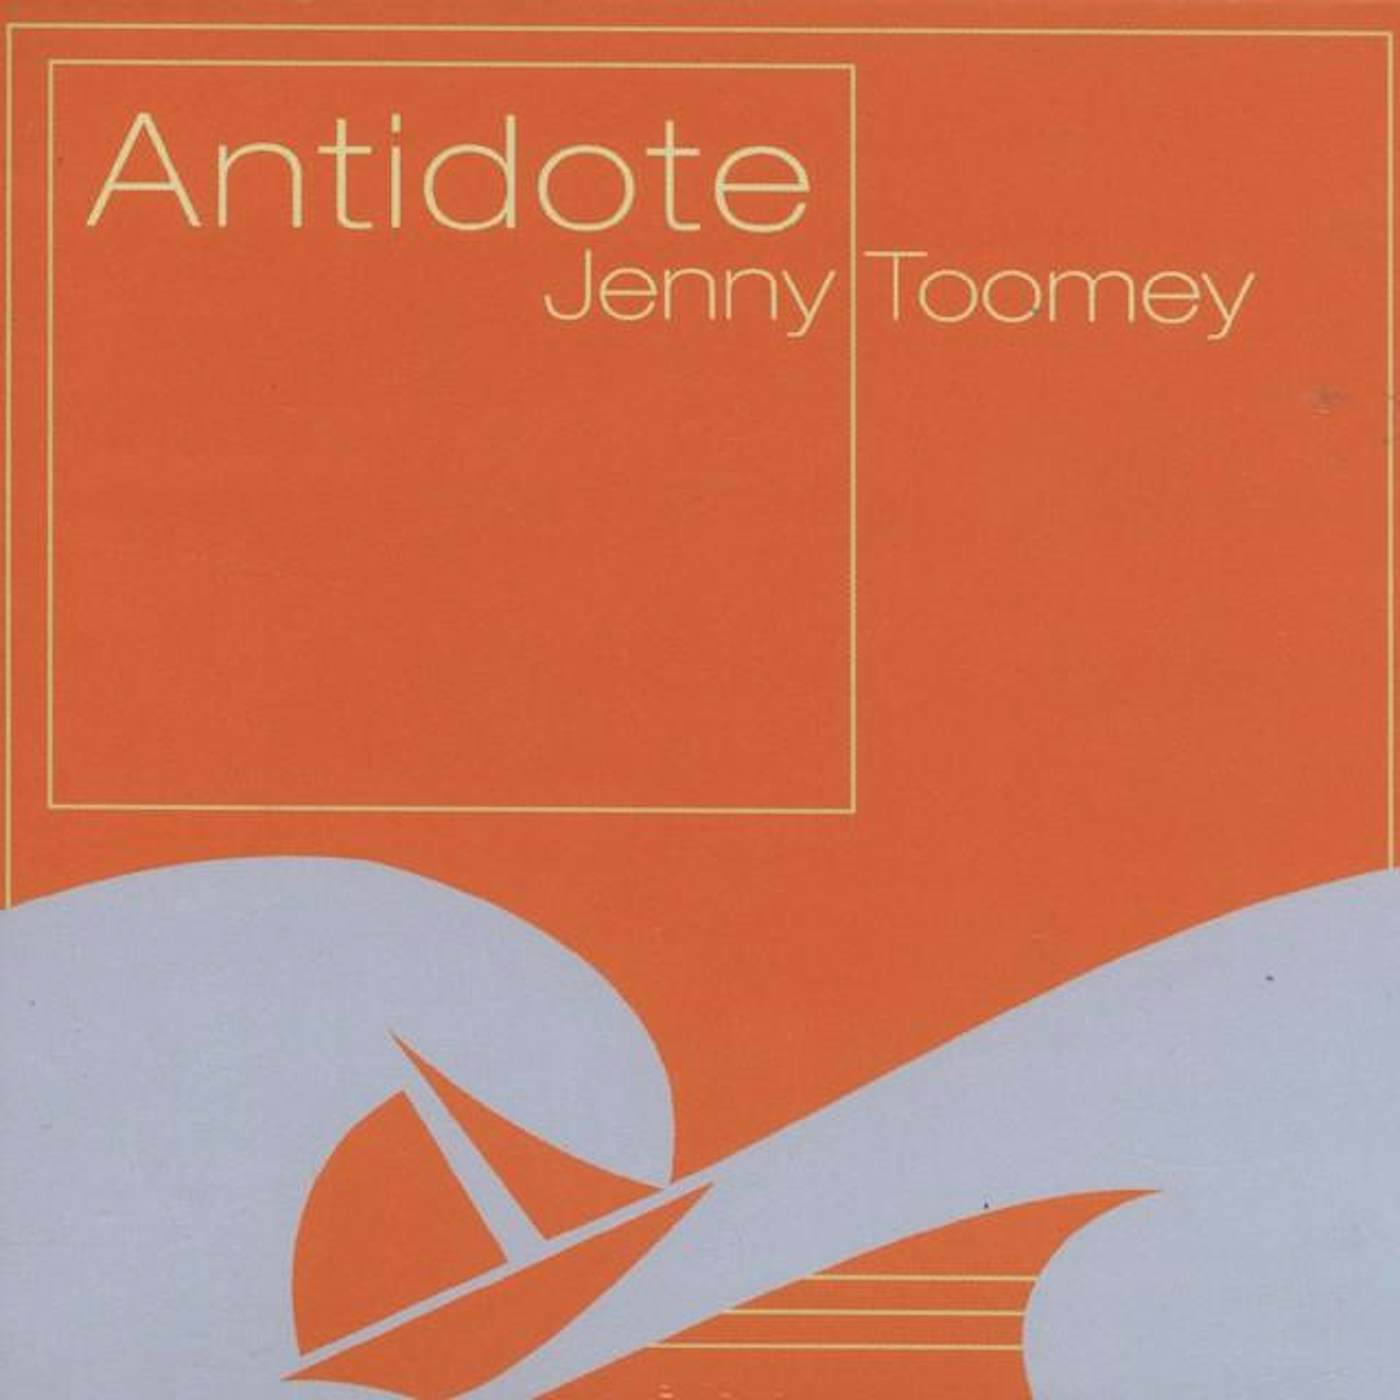 Jenny Toomey